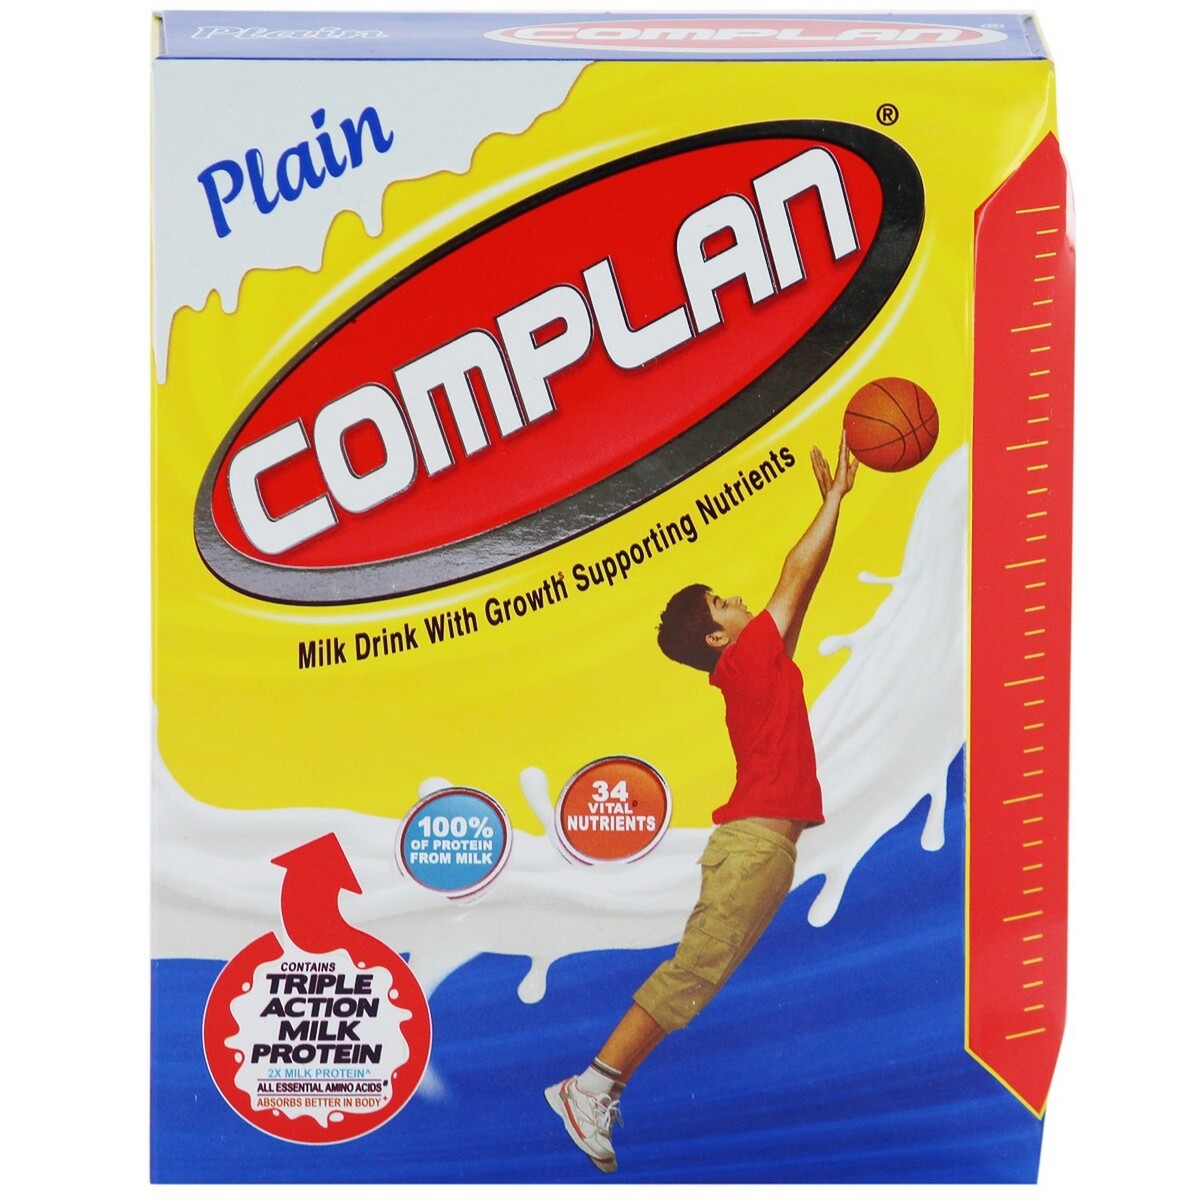 Complain plain 500g pack